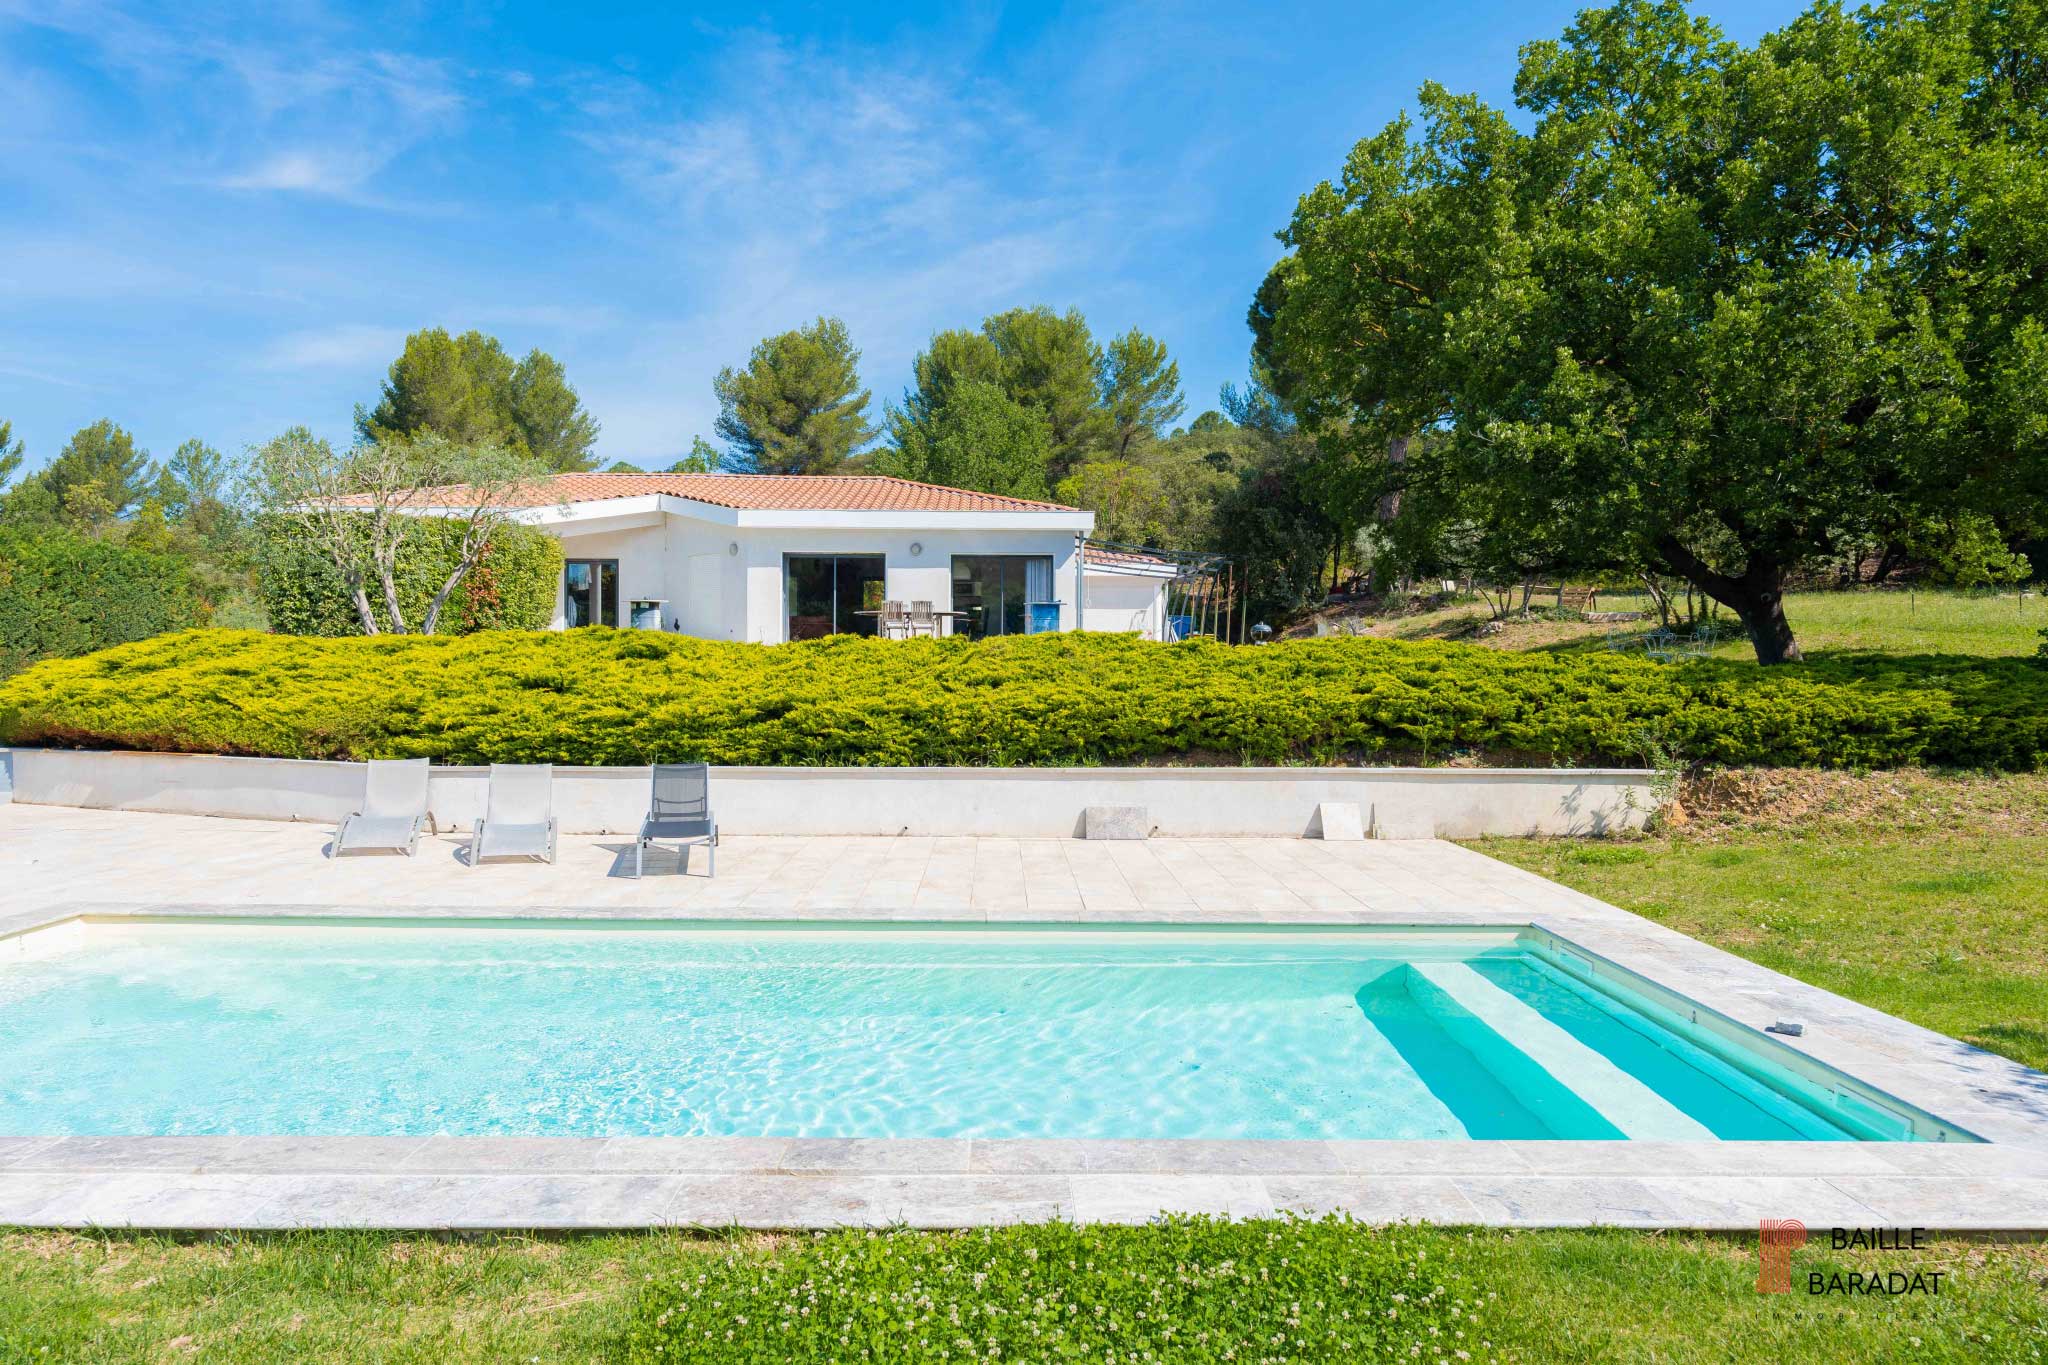 L'agence immobilière Baille Baradat vous propoise une belle maison familiale avec piscine à vendre à Bouc Bel Air dans le 13320.